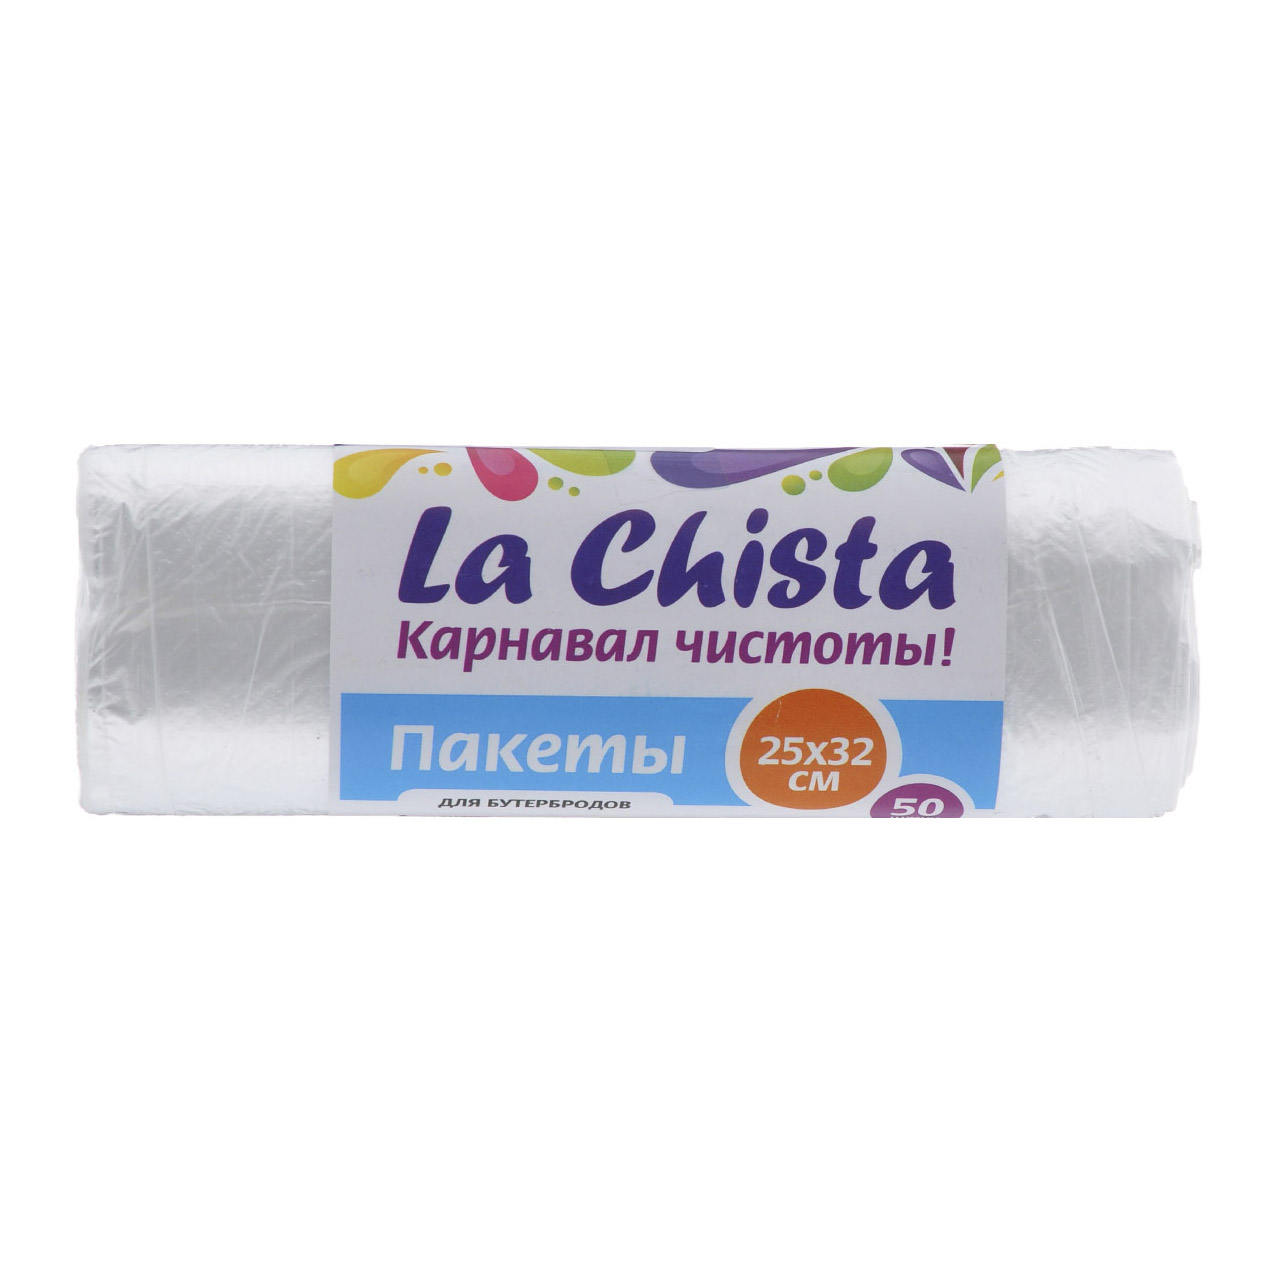 Пакеты для бутербродов La Chista 25x32 см 50 шт, цвет прозрачный